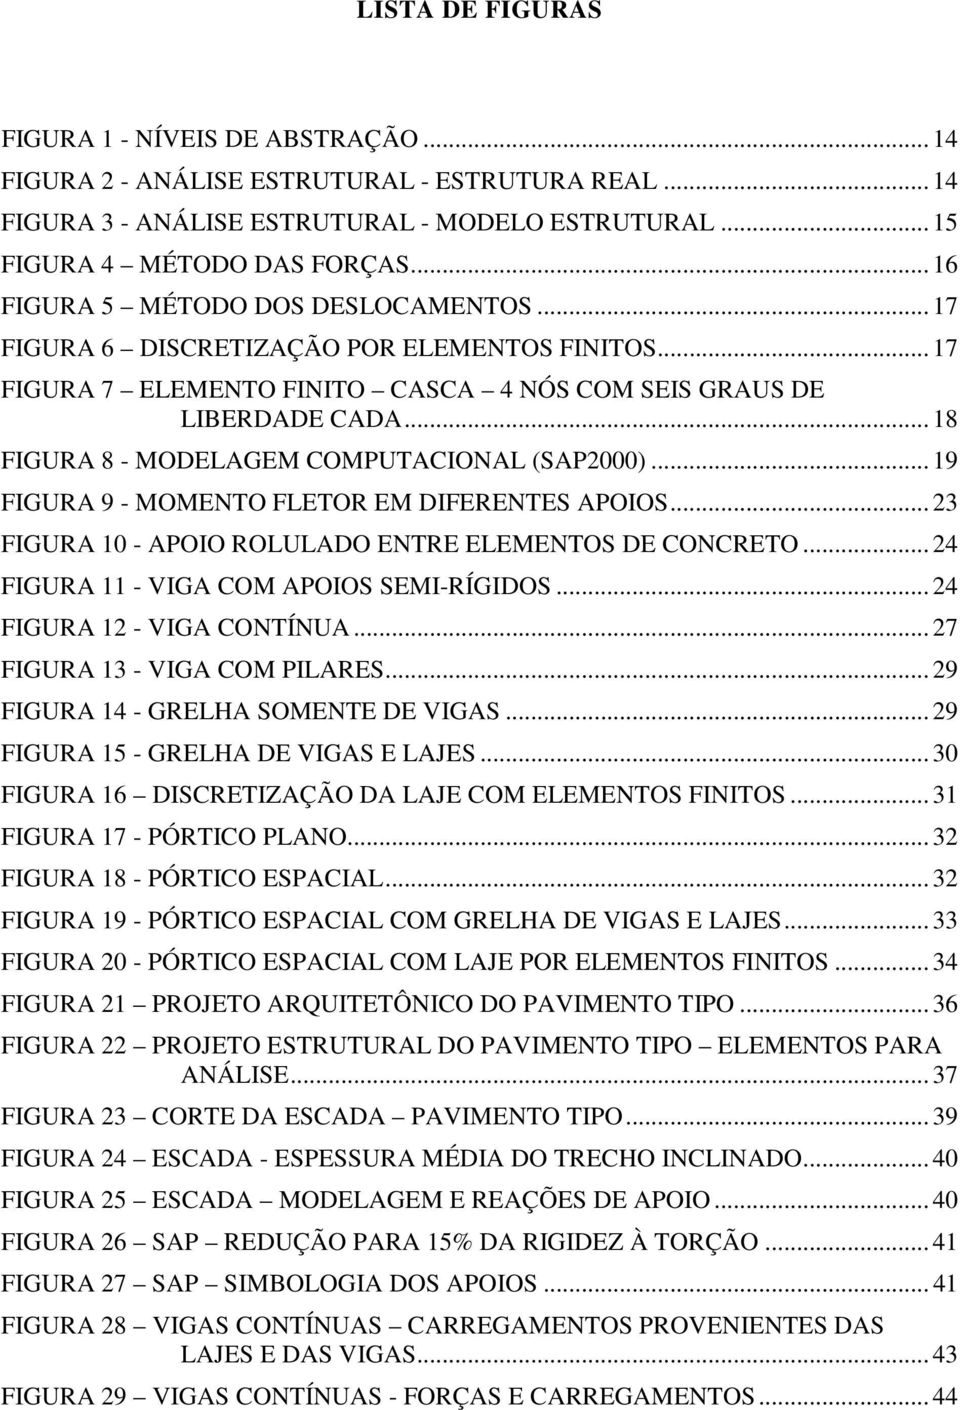 .. 18 FIGURA 8 - MODELAGEM COMPUTACIONAL (SAP2000)... 19 FIGURA 9 - MOMENTO FLETOR EM DIFERENTES APOIOS... 23 FIGURA 10 - APOIO ROLULADO ENTRE ELEMENTOS DE CONCRETO.